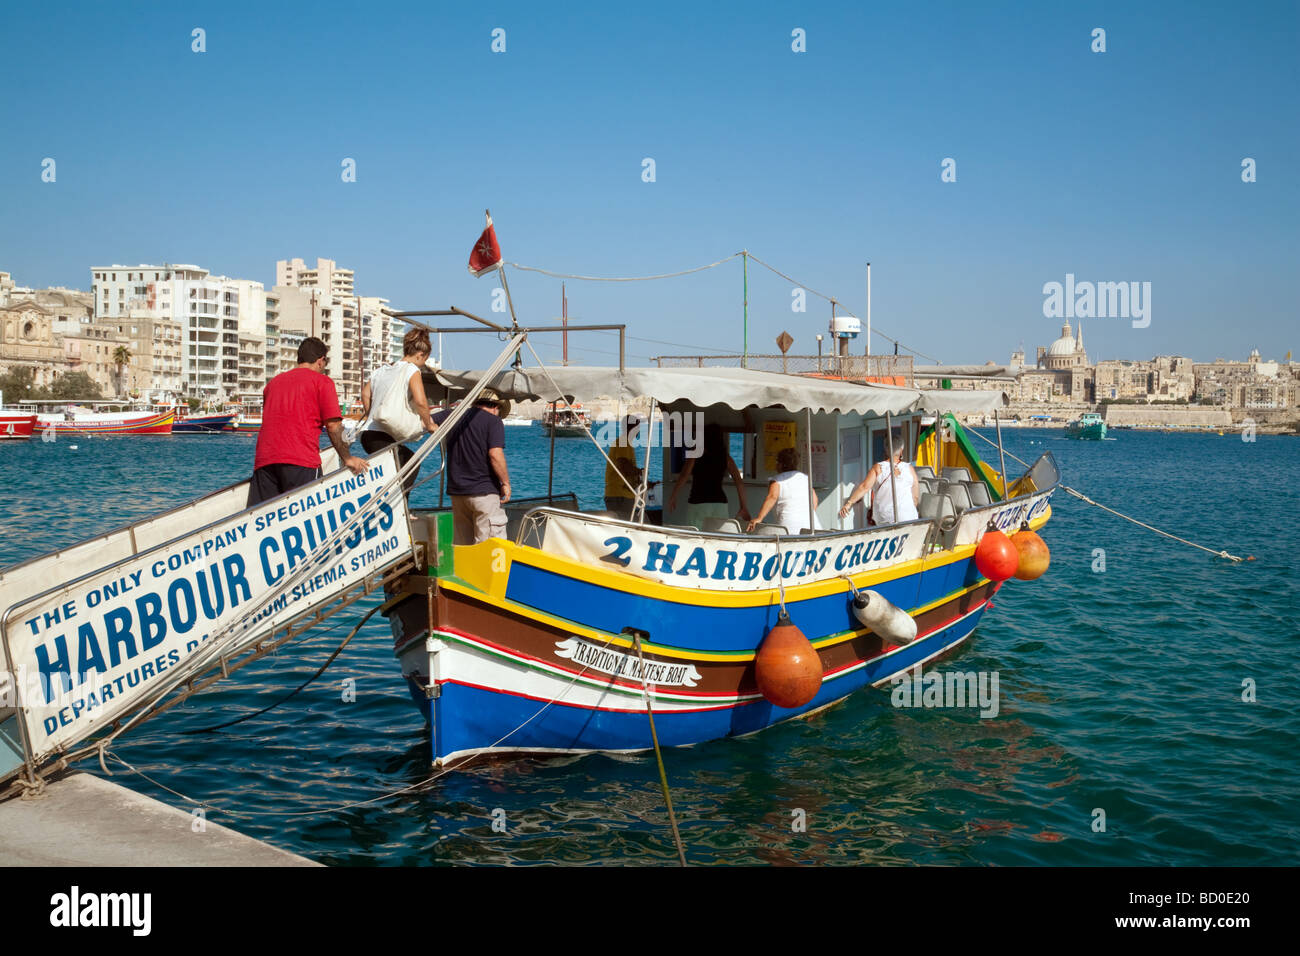 Touristen einsteigen in eine Luzzu (traditionelle maltesische Boot) für eine Kreuzfahrt rund um den Hafen von Sliema, Valletta, Malta Stockfoto